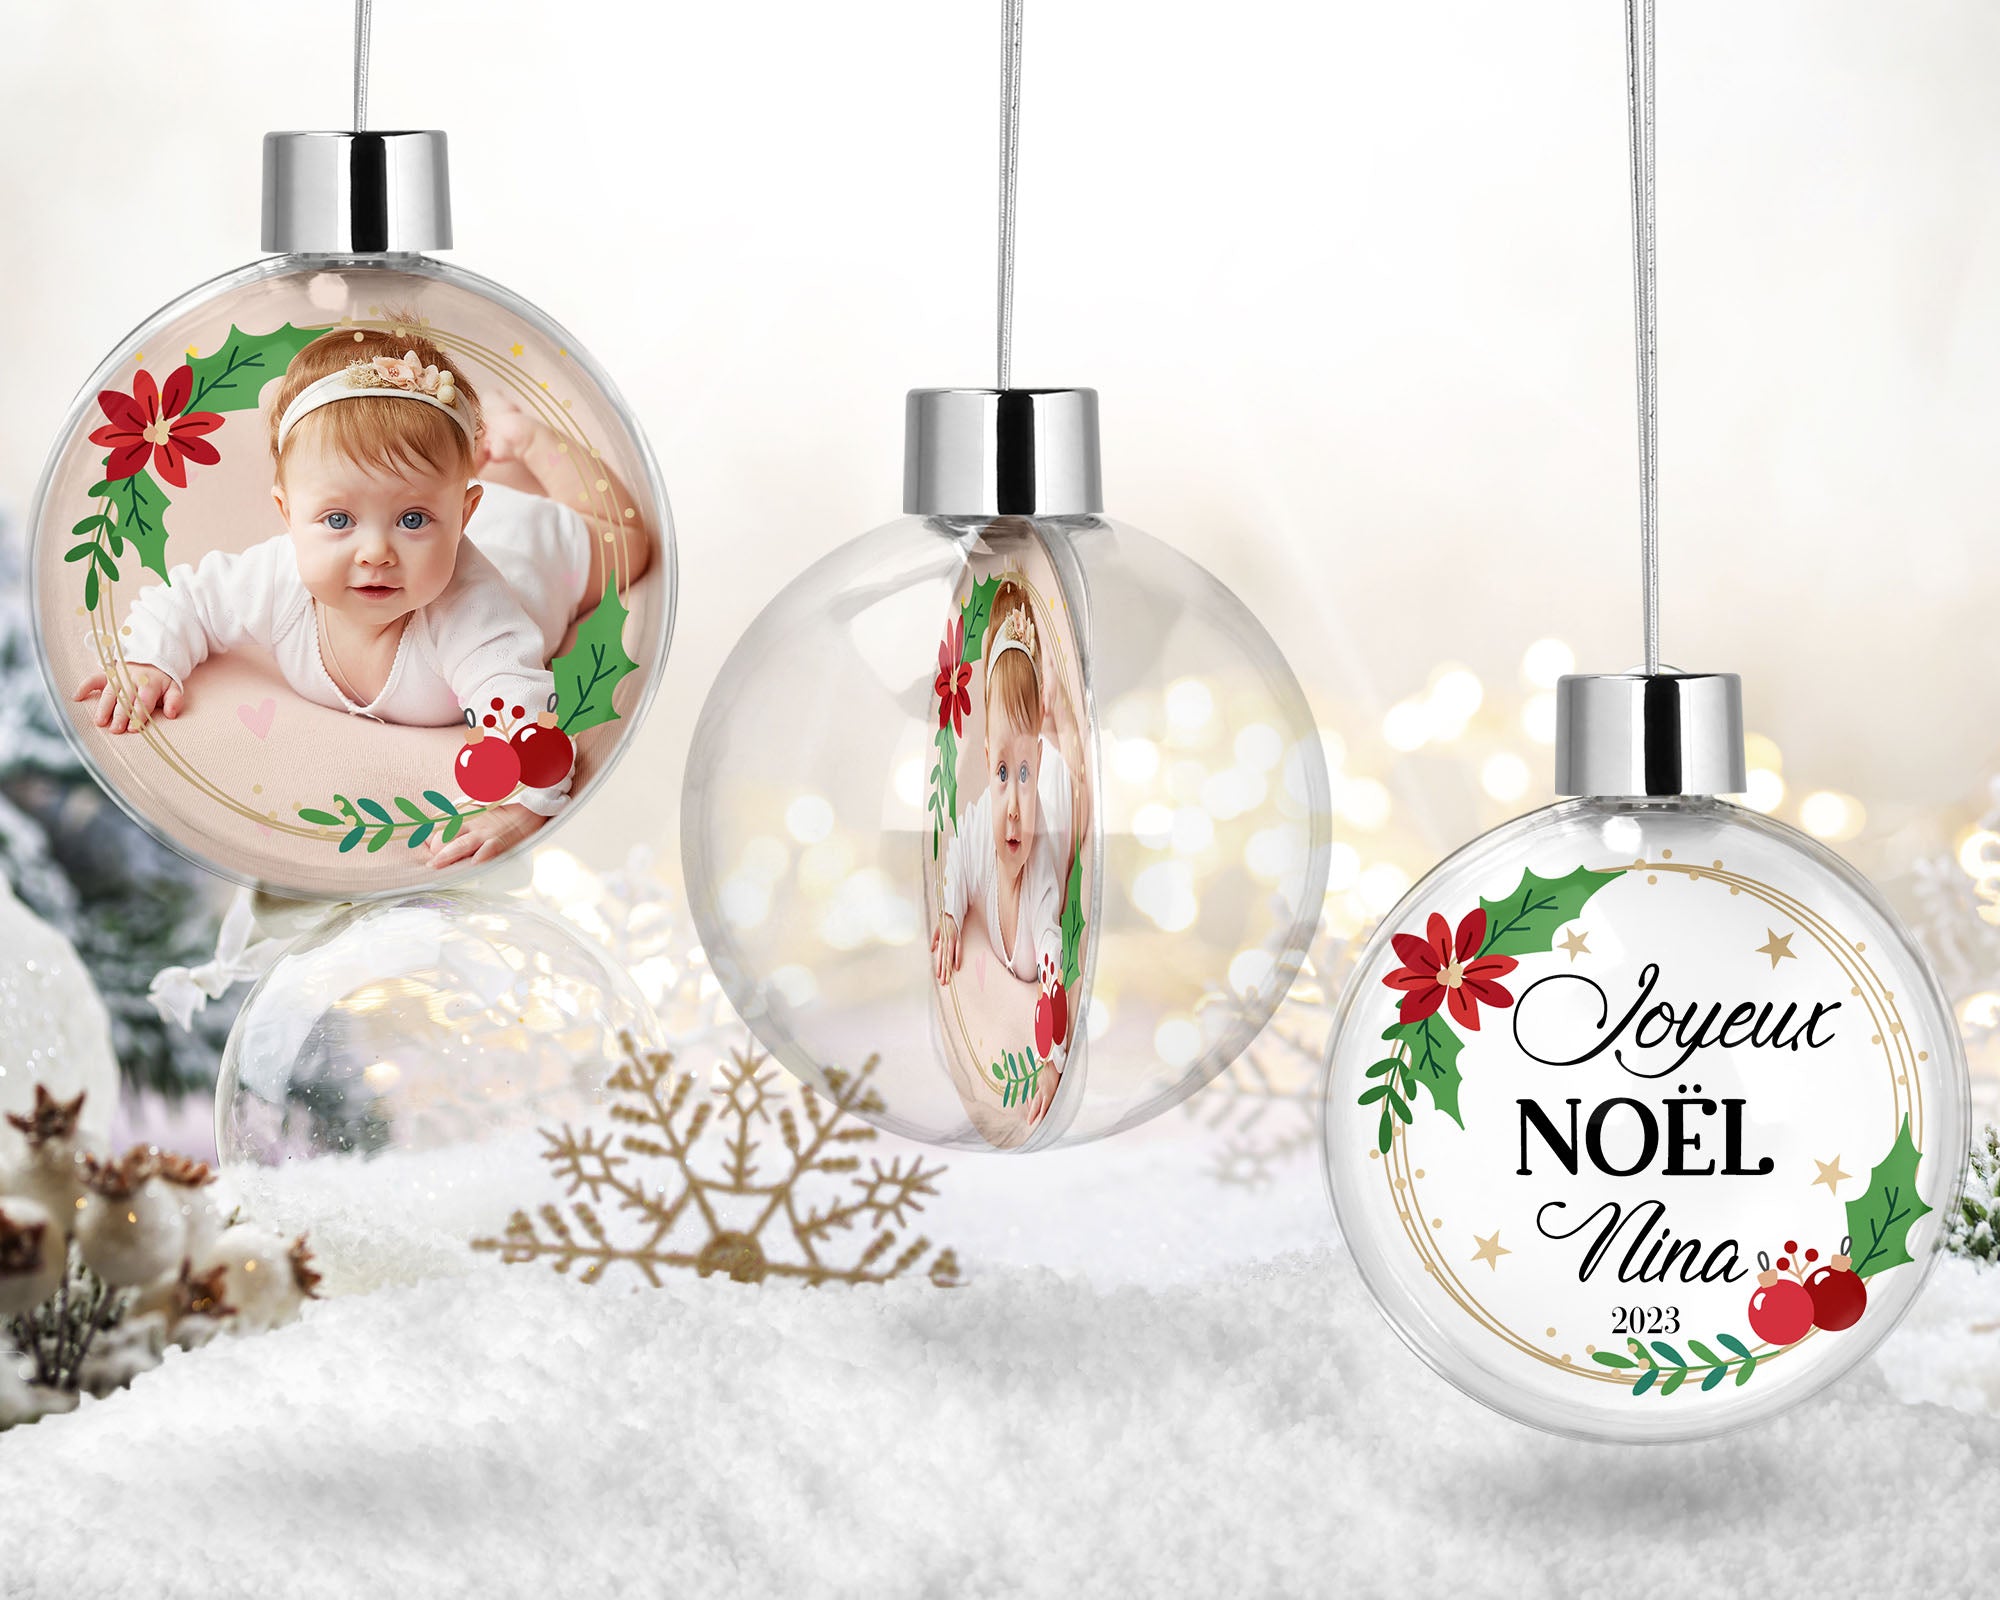 Admirez la boule de Noël personnalisée, un trésor pour le premier Noël de bébé.